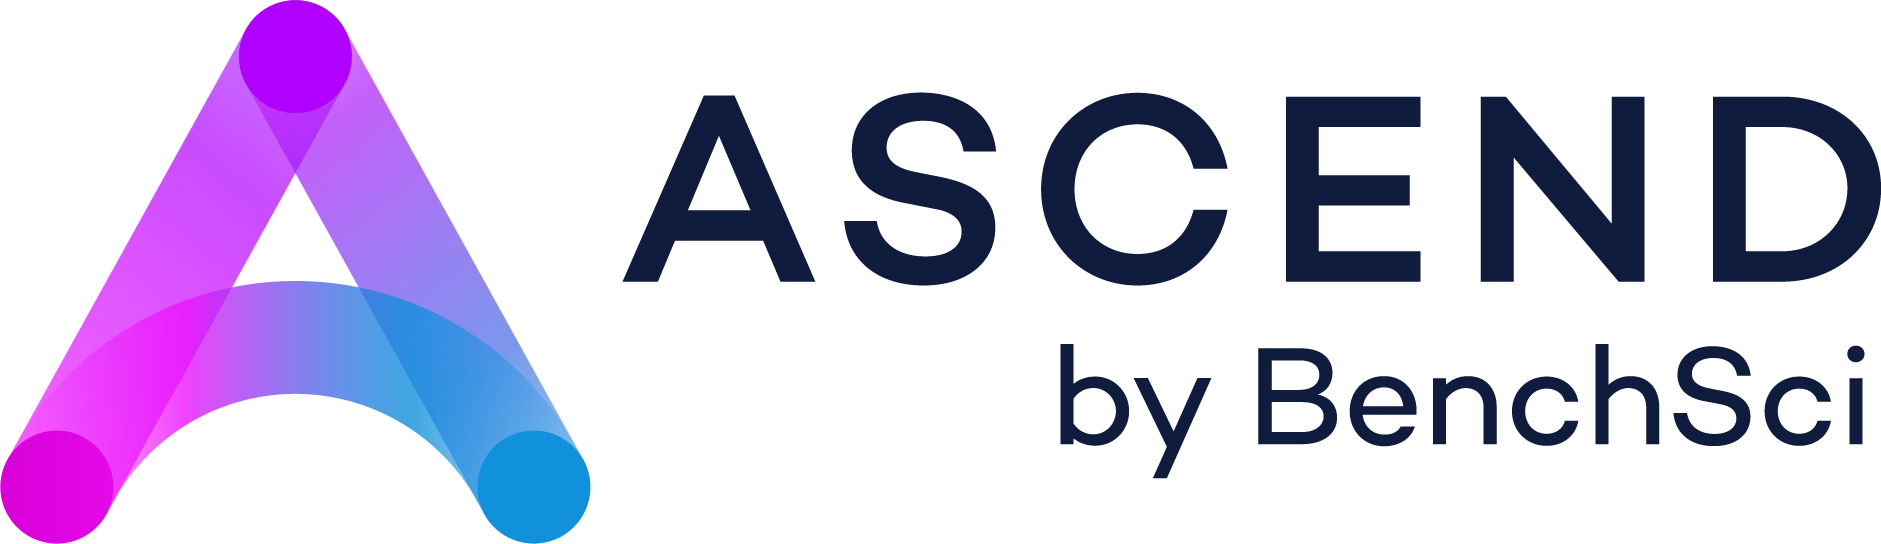 ASCEND by BenchSci logo